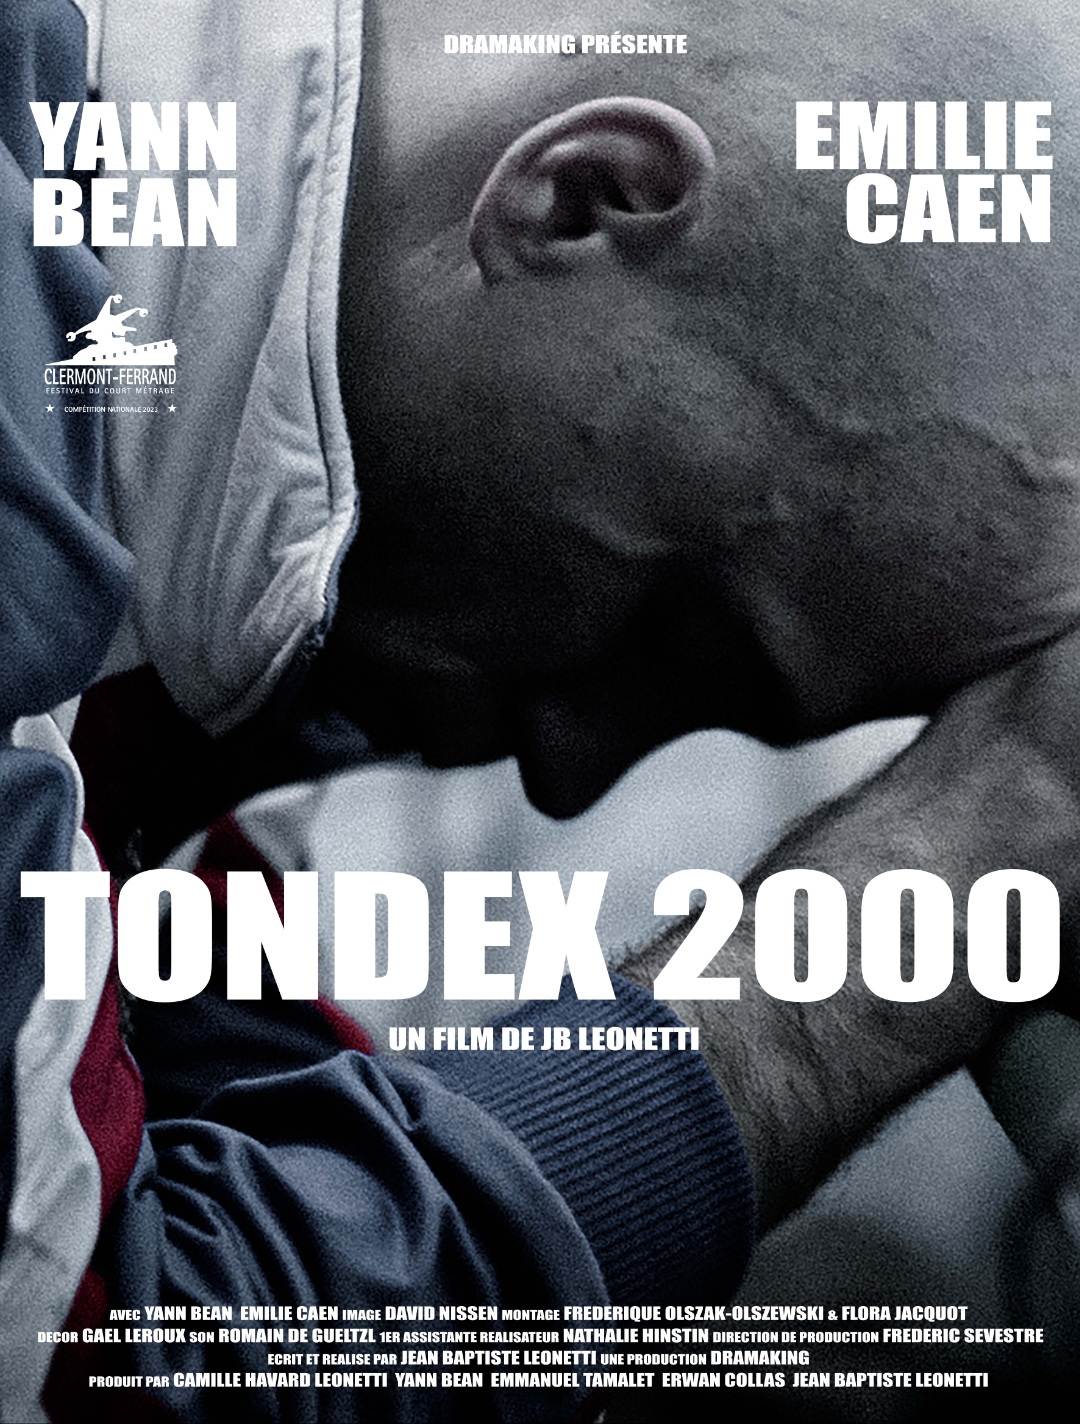 Actu Yann Bean : Tondex 2000 primé au festival international de Clermont  Ferrand - VOIX OFF - PUB - DOC - DOUBLAGE - OUTIL CASTING